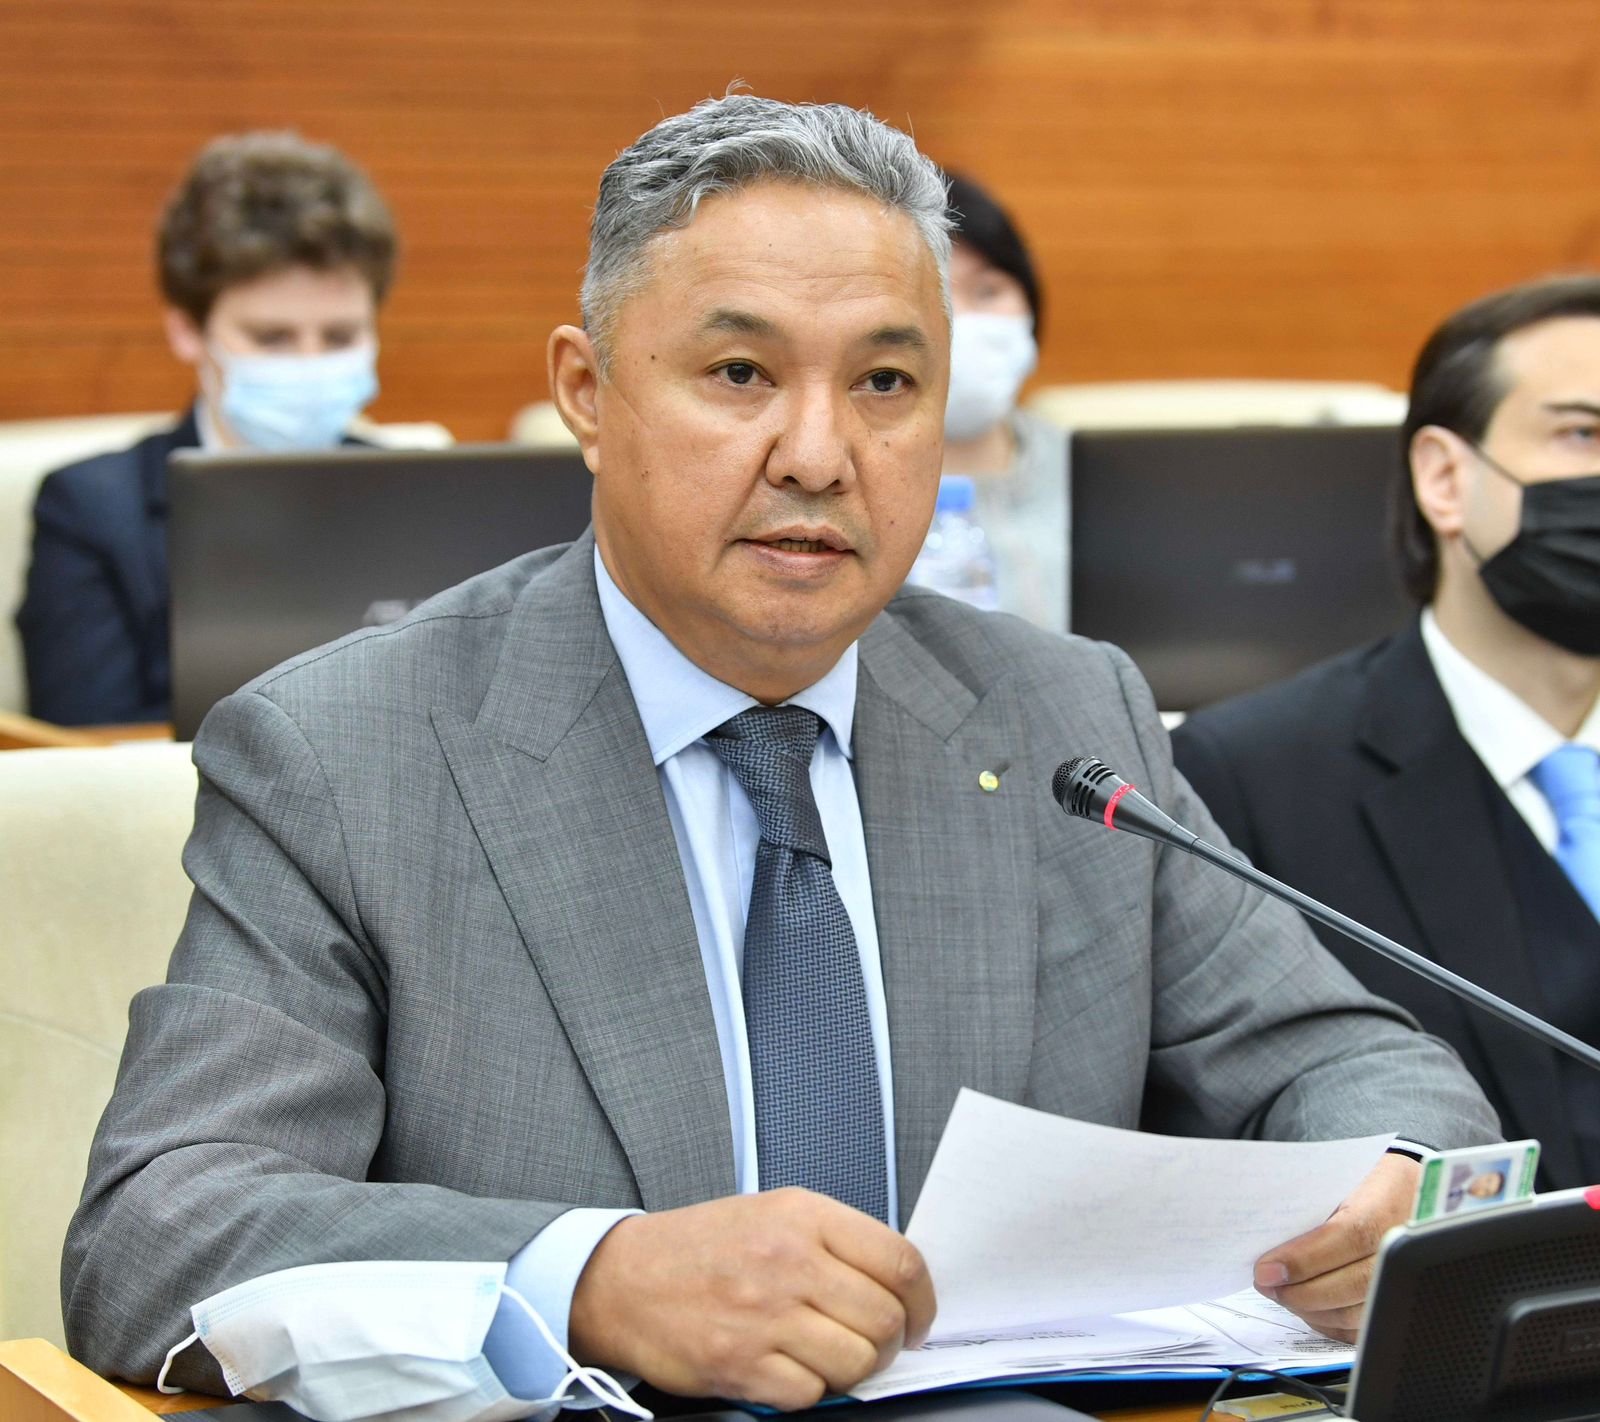 Президенттің Алматы қаласының сейсмикалық қауіпсіздігін қамтамасыз ету жөніндегі тапсырмасынан туған тұжырымдар